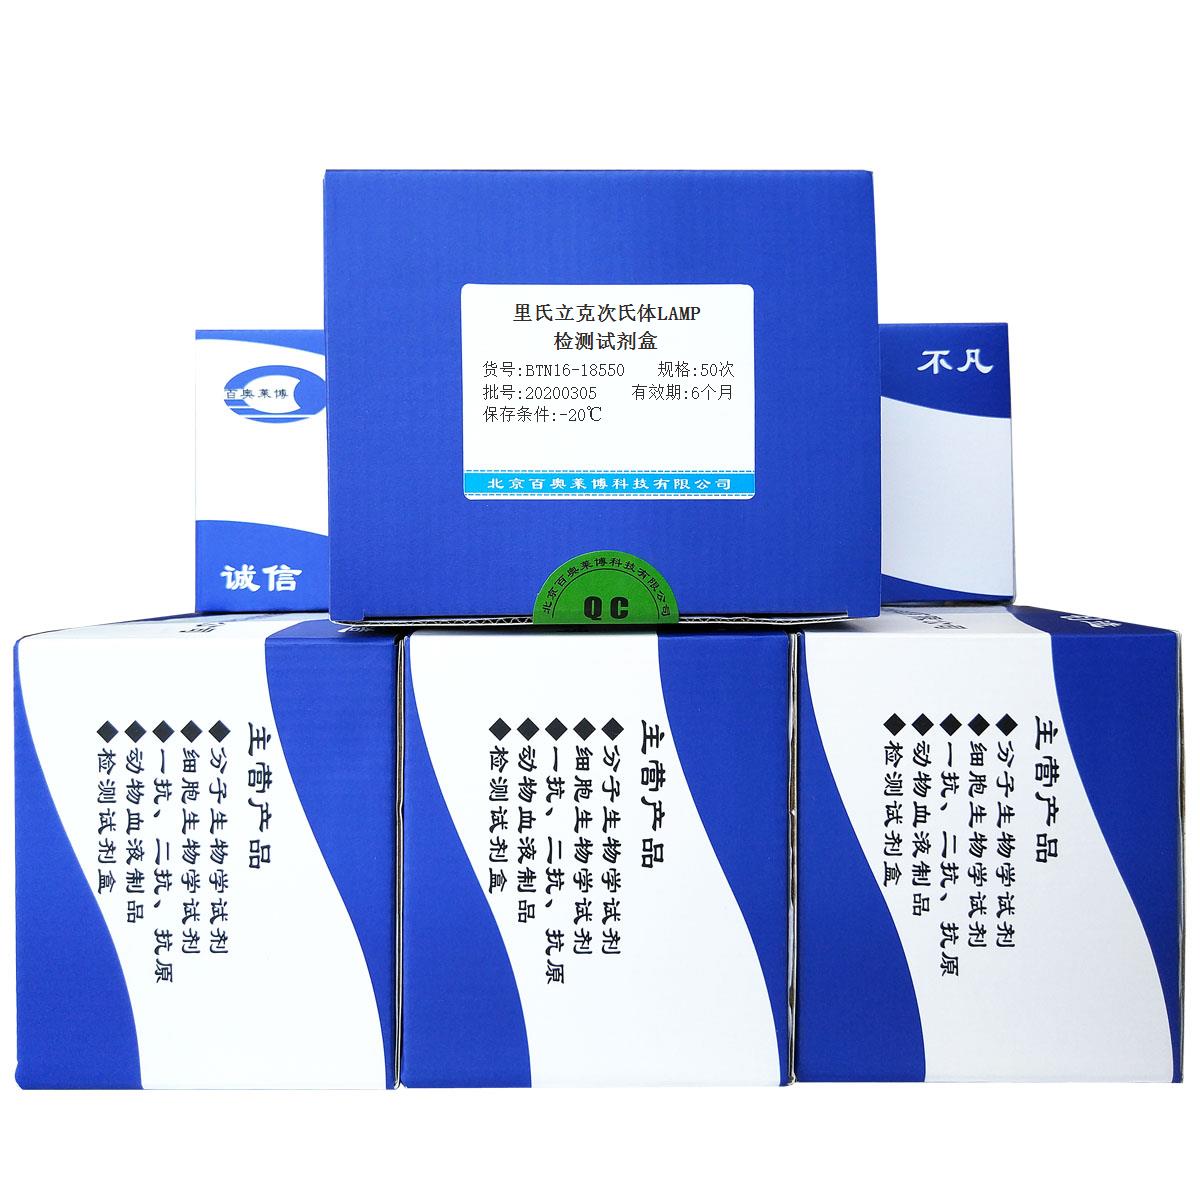 里氏立克次氏体LAMP检测试剂盒北京供应商